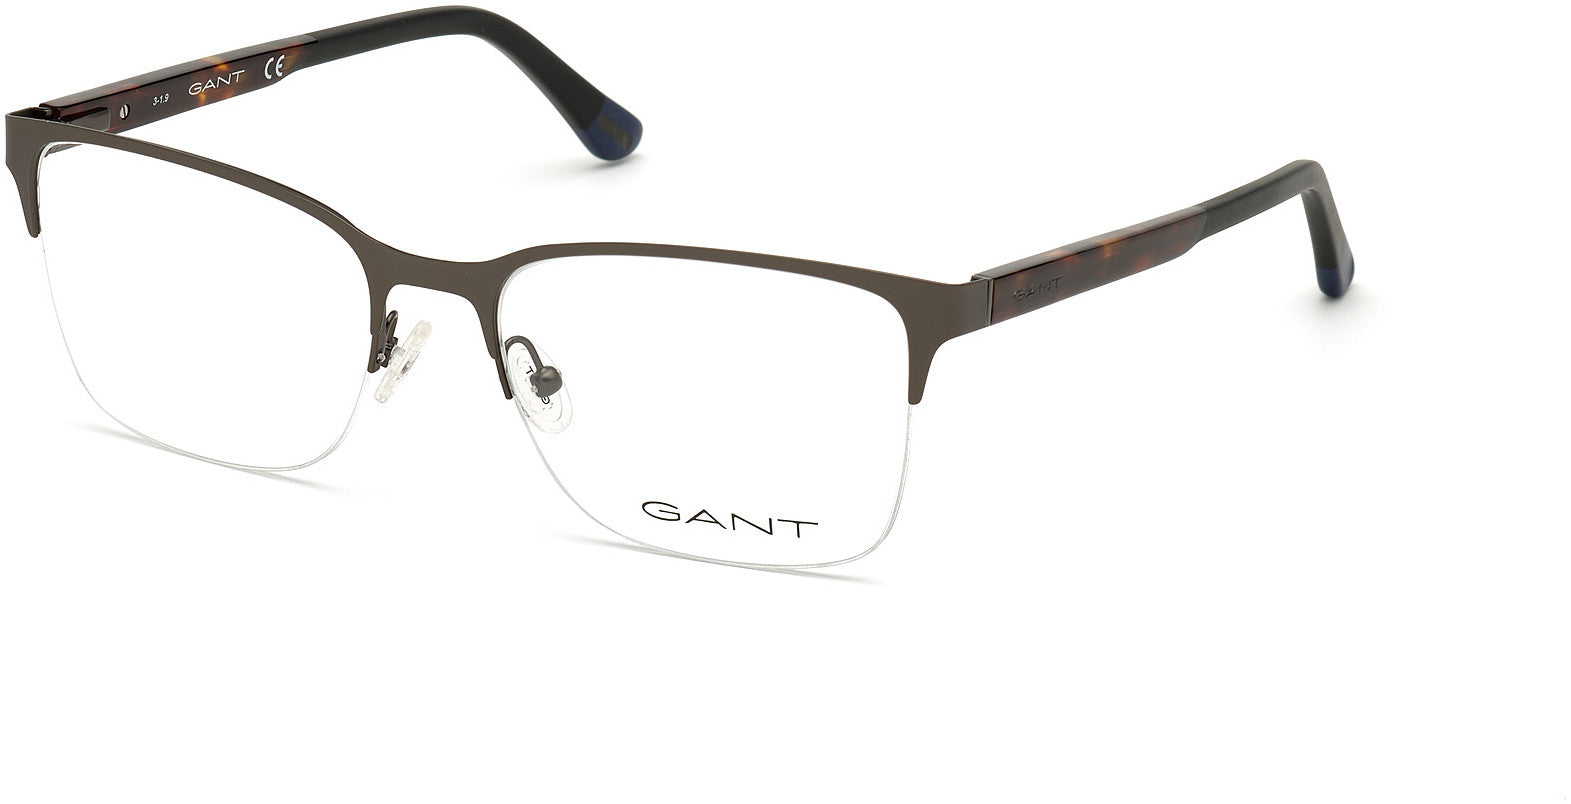 Gant GA3202 Rectangular Eyeglasses 009-009 - Matte Gunmetal